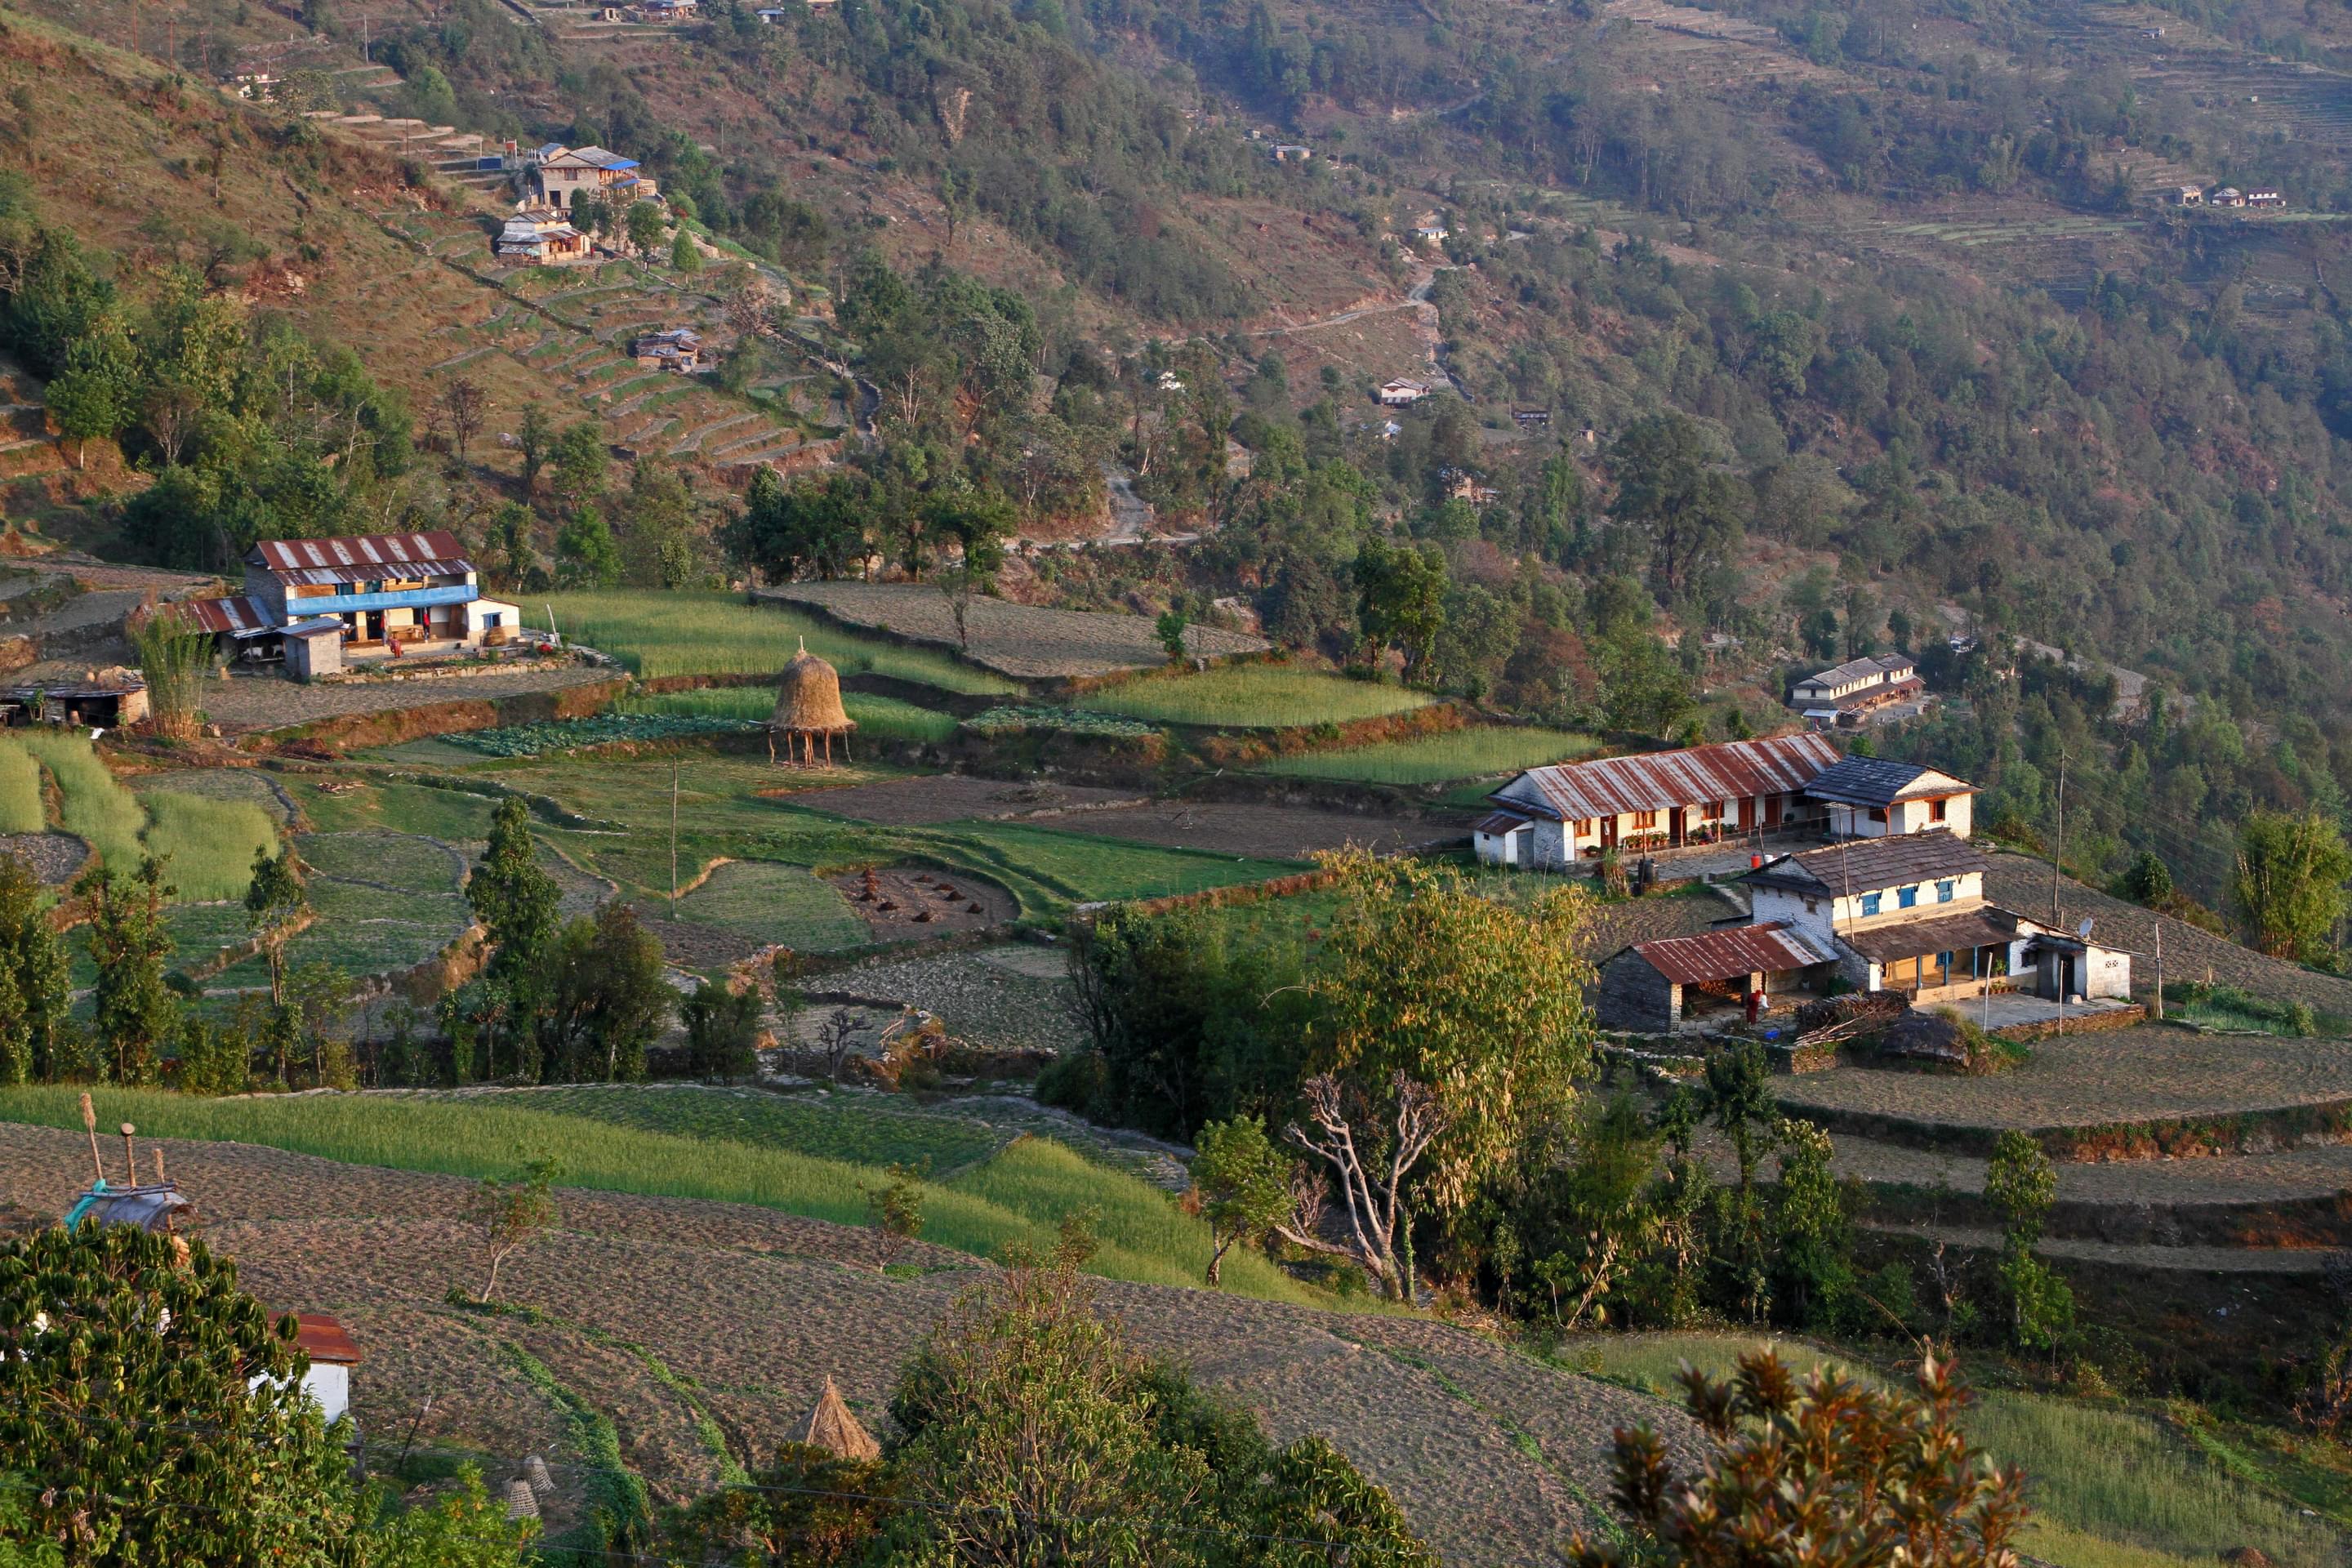 Kimche Village Overview